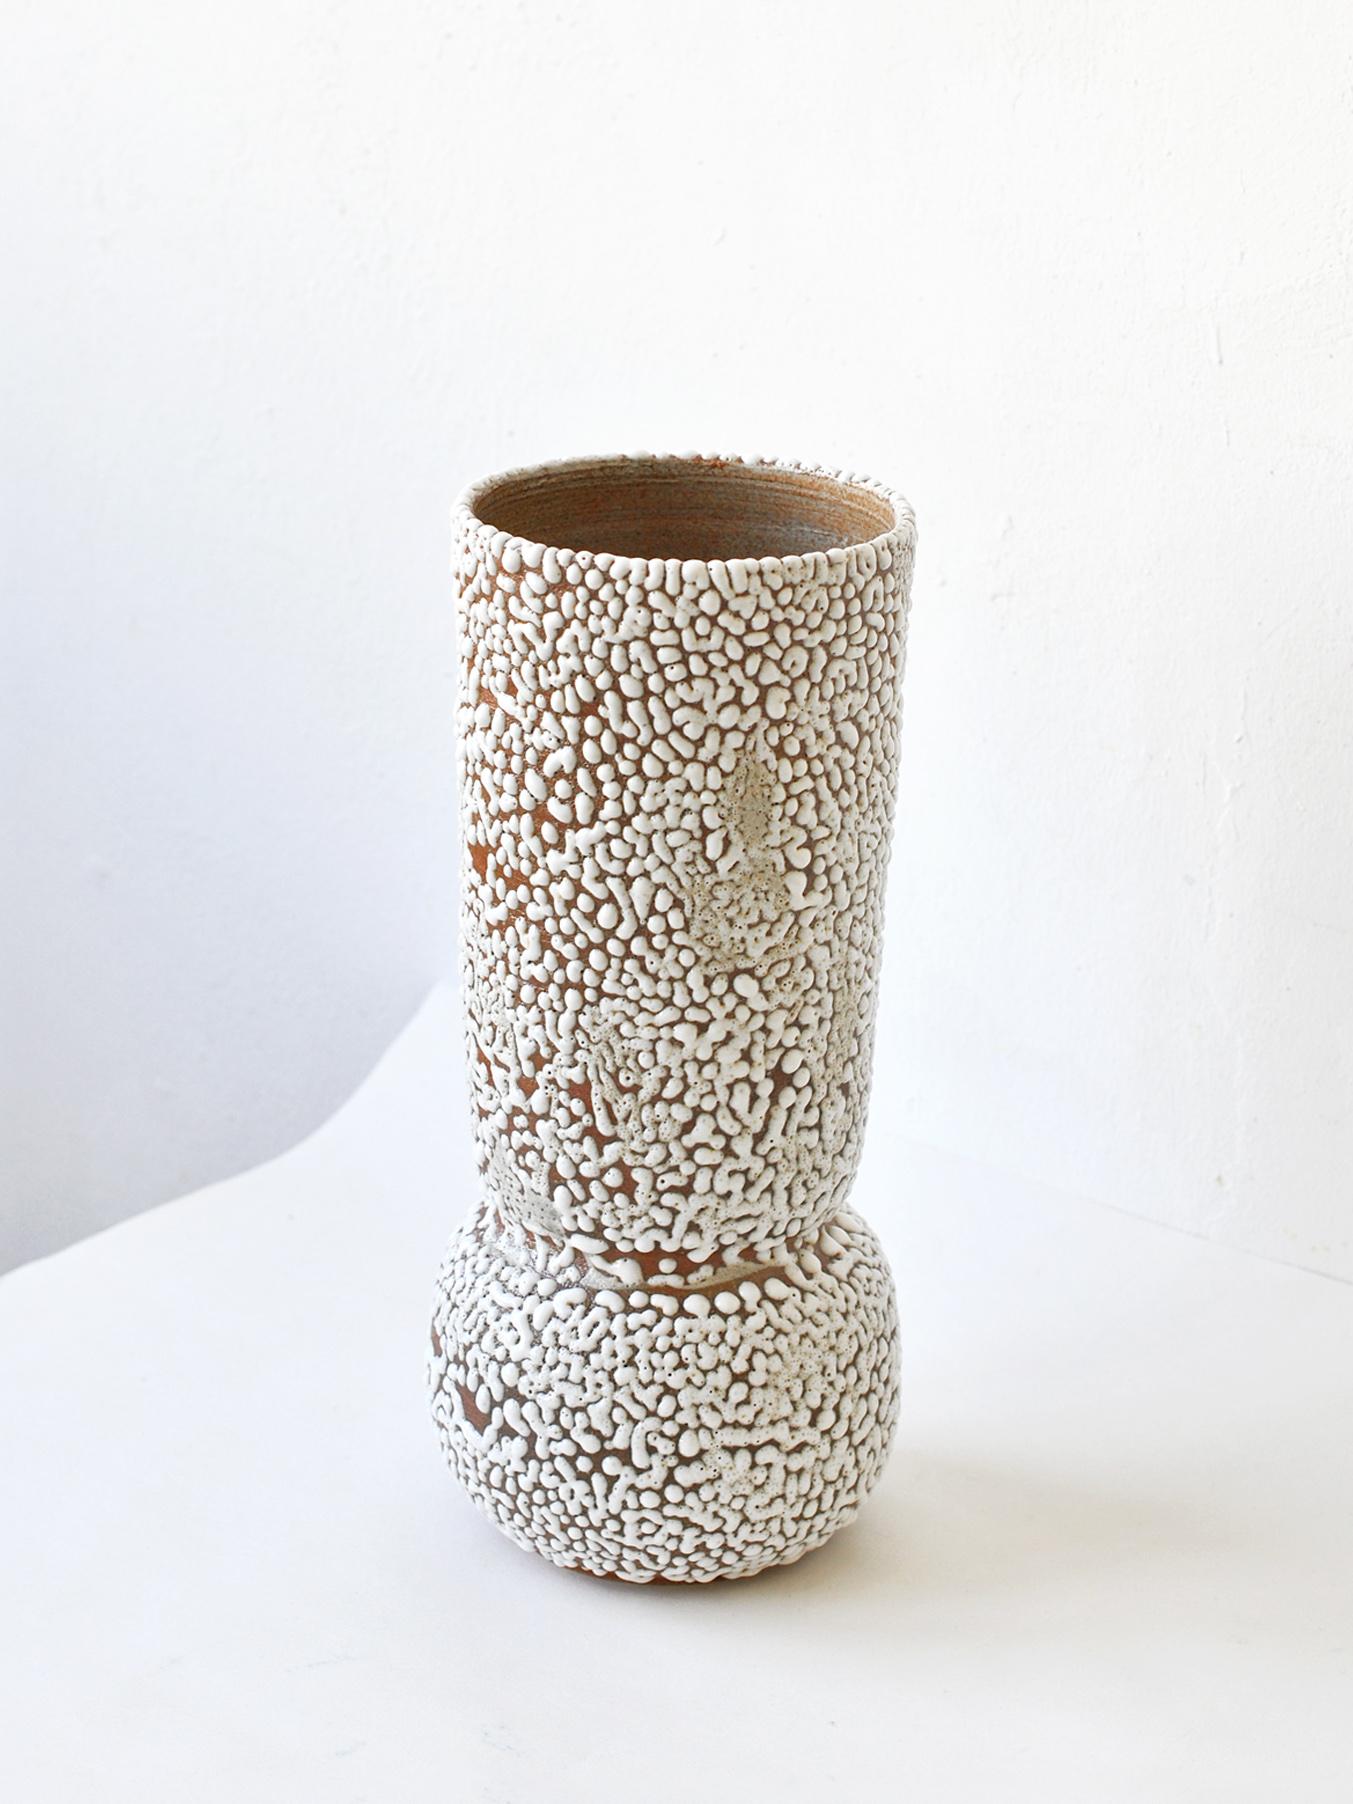 Contemporary C-018 White Stoneware Vase by Moïo Studio For Sale